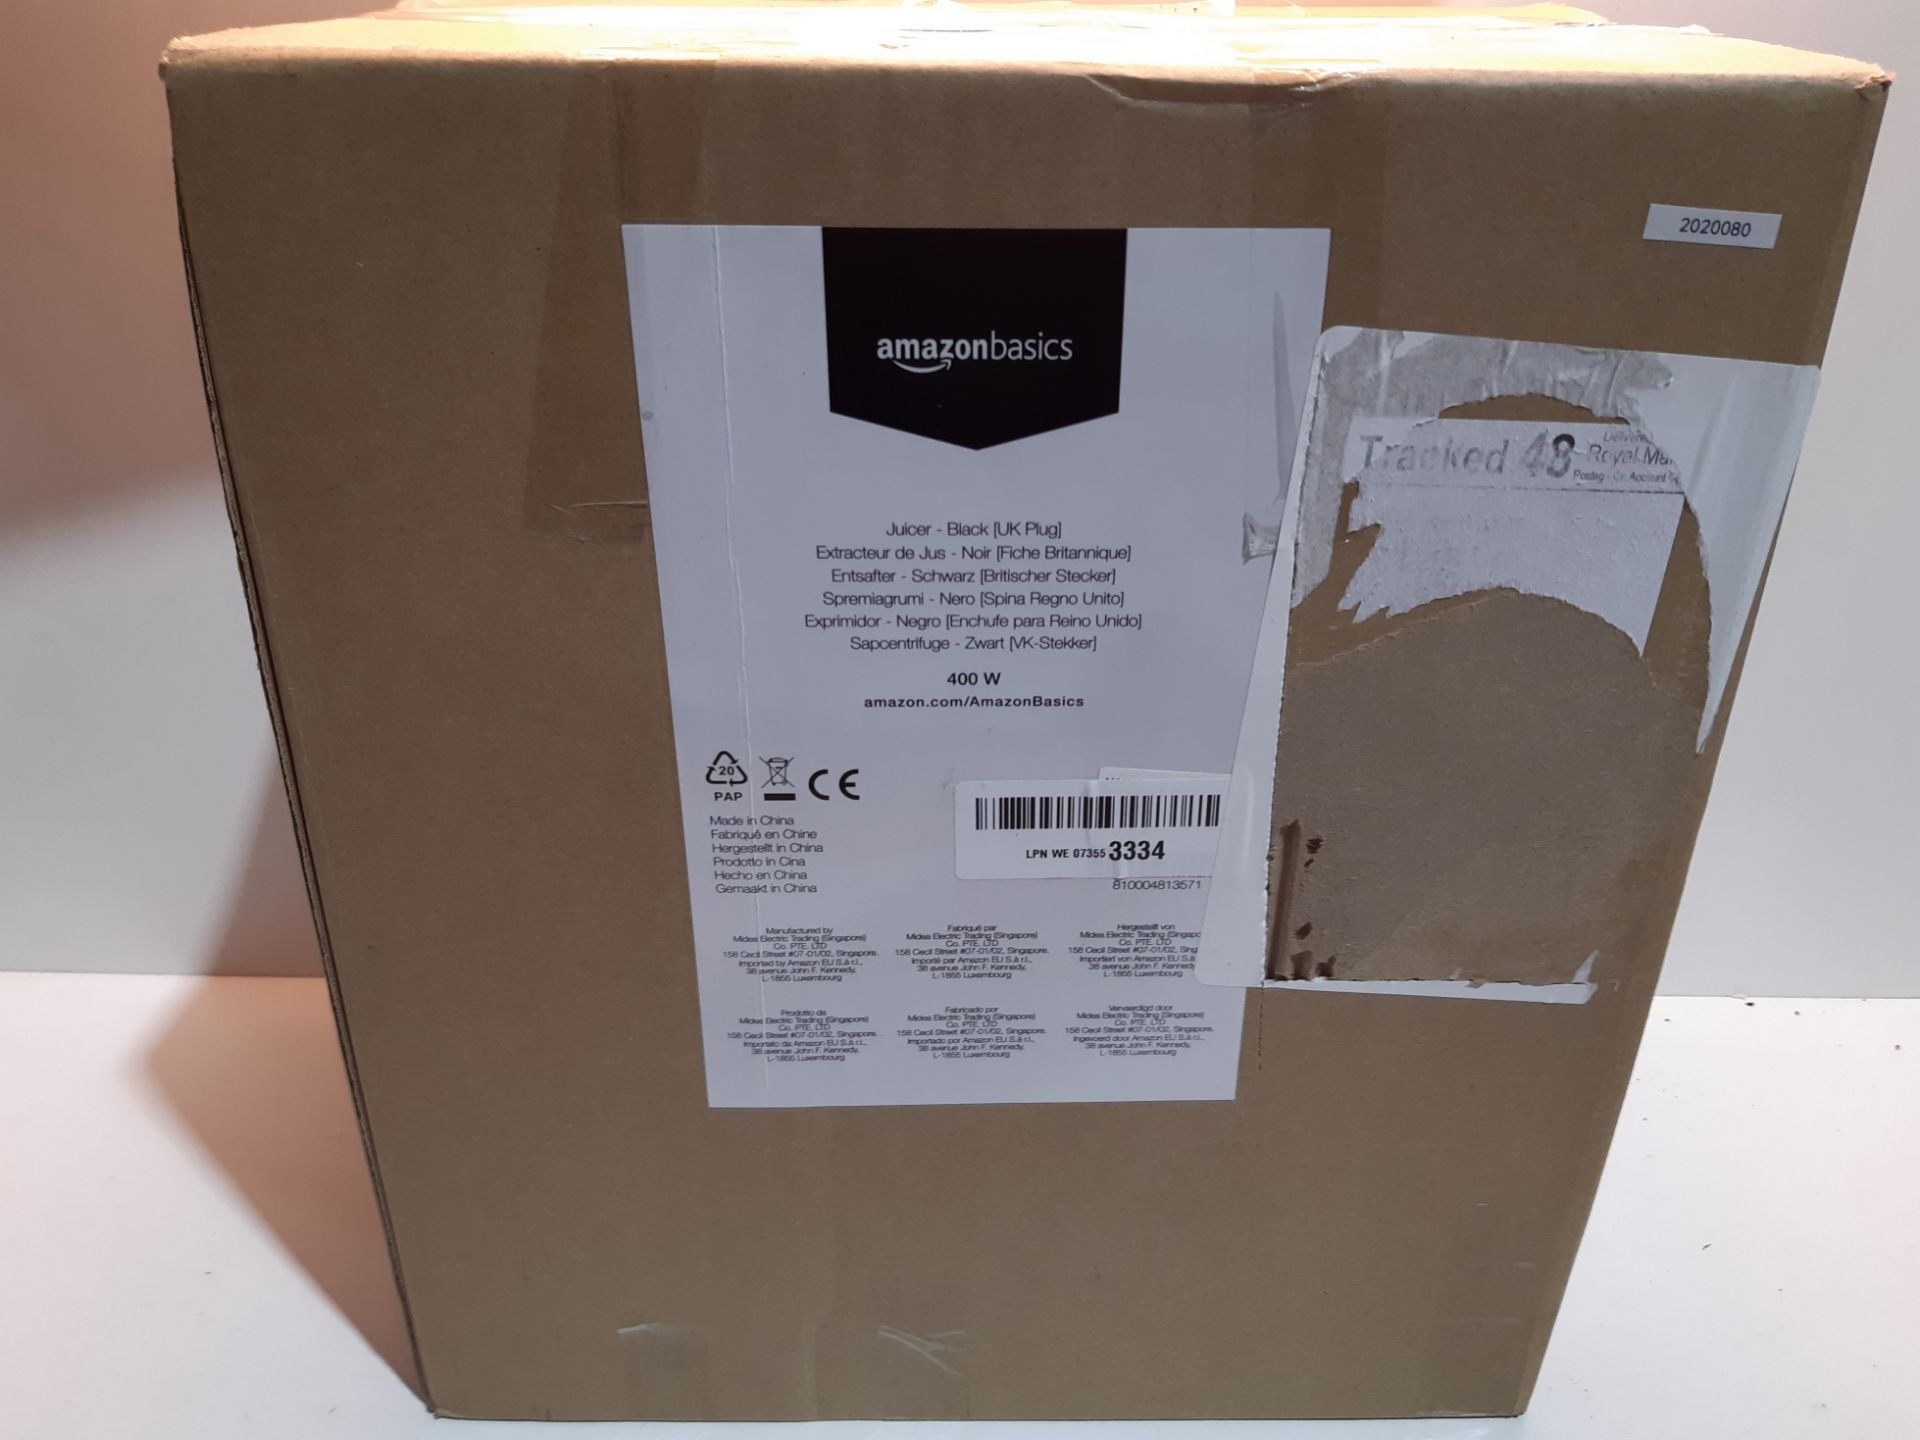 RRP £30.17 Amazon Basics Juicer, 400W - Black